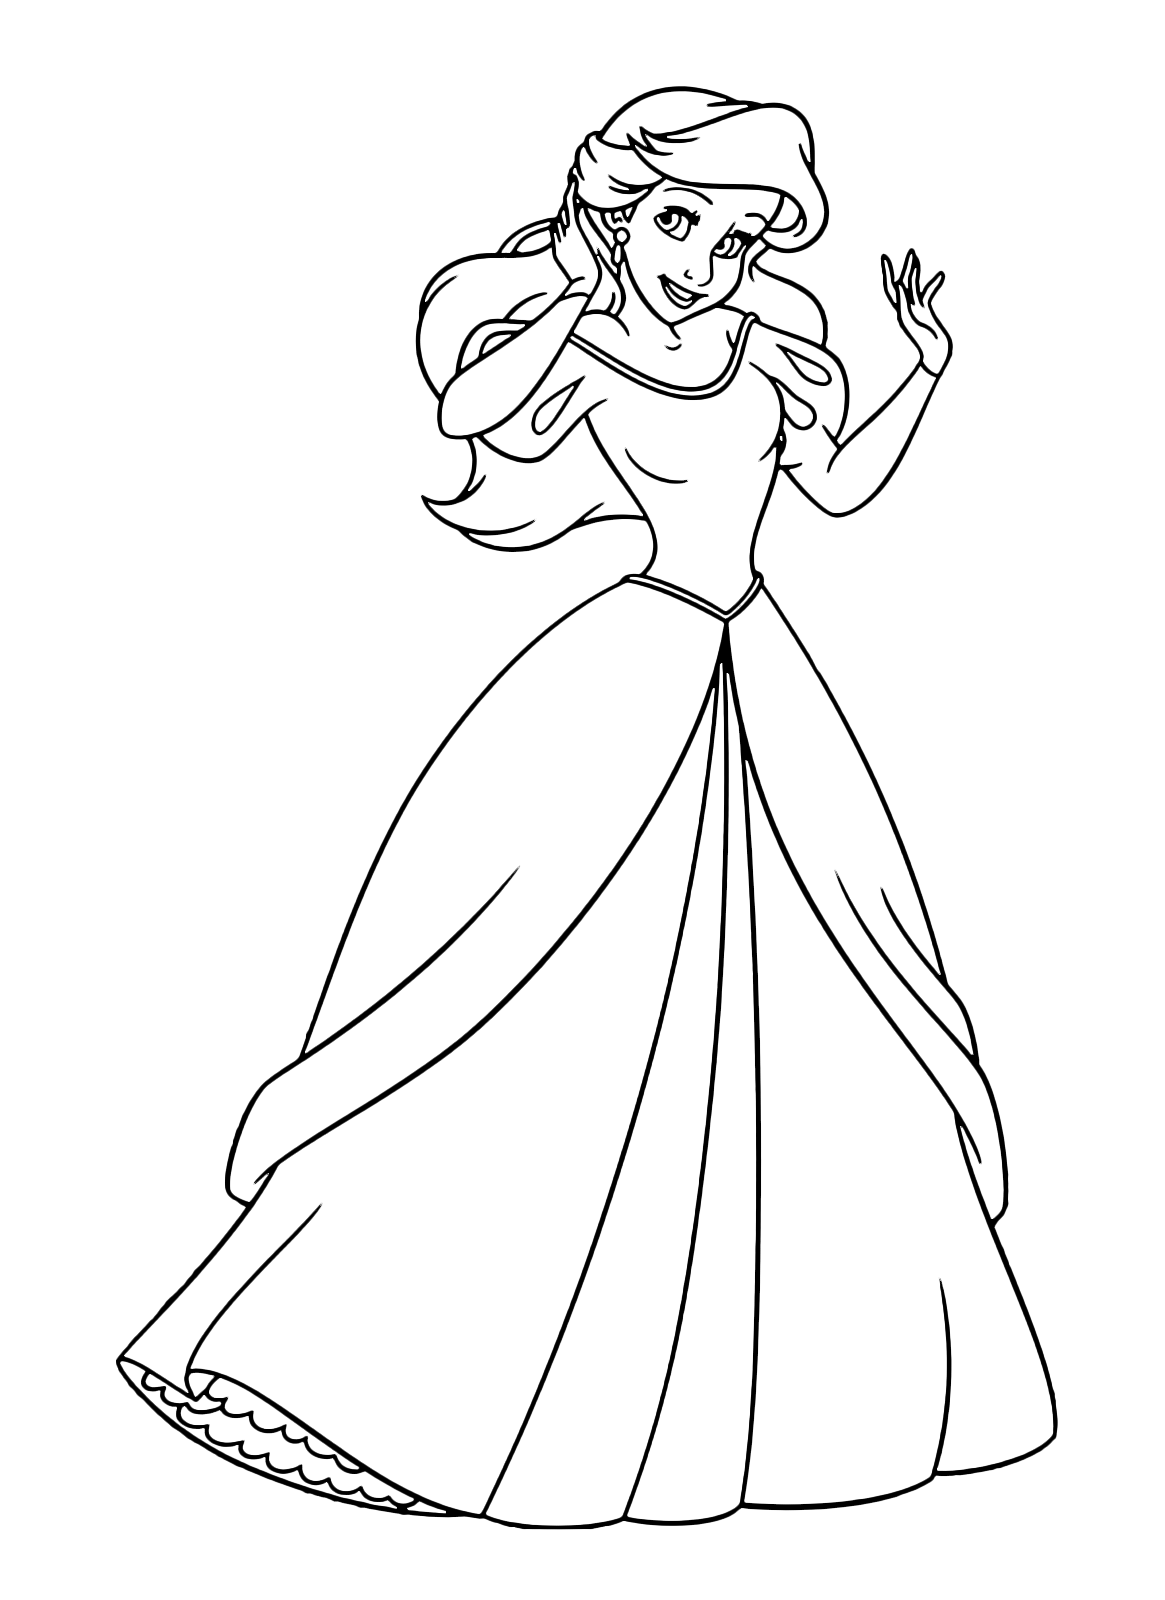 The Little Mermaid - Ariel wears a beautiful princess dress